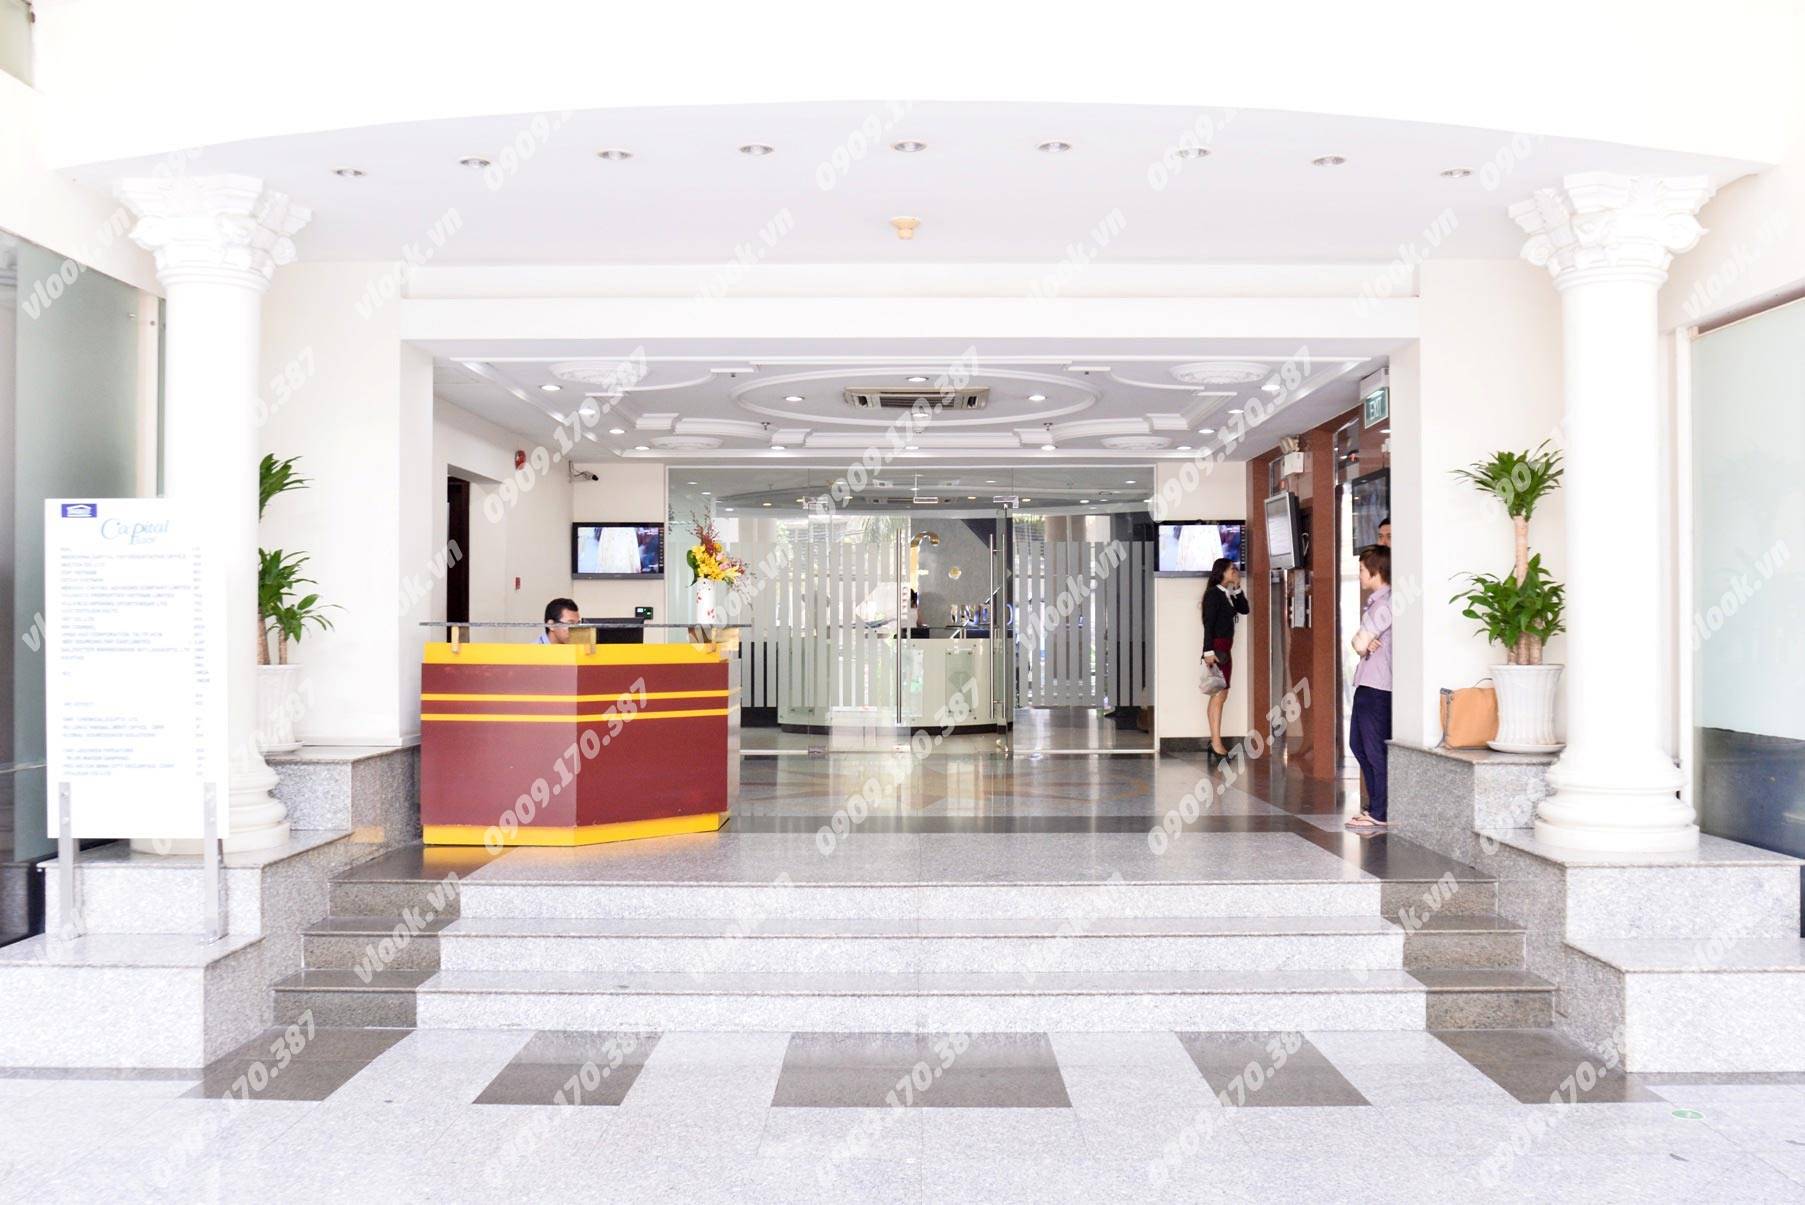 Cao ốc cho thuê văn phòng Capital Place, Thái Văn Lung, Quận 1, TPHCM - vlook.vn